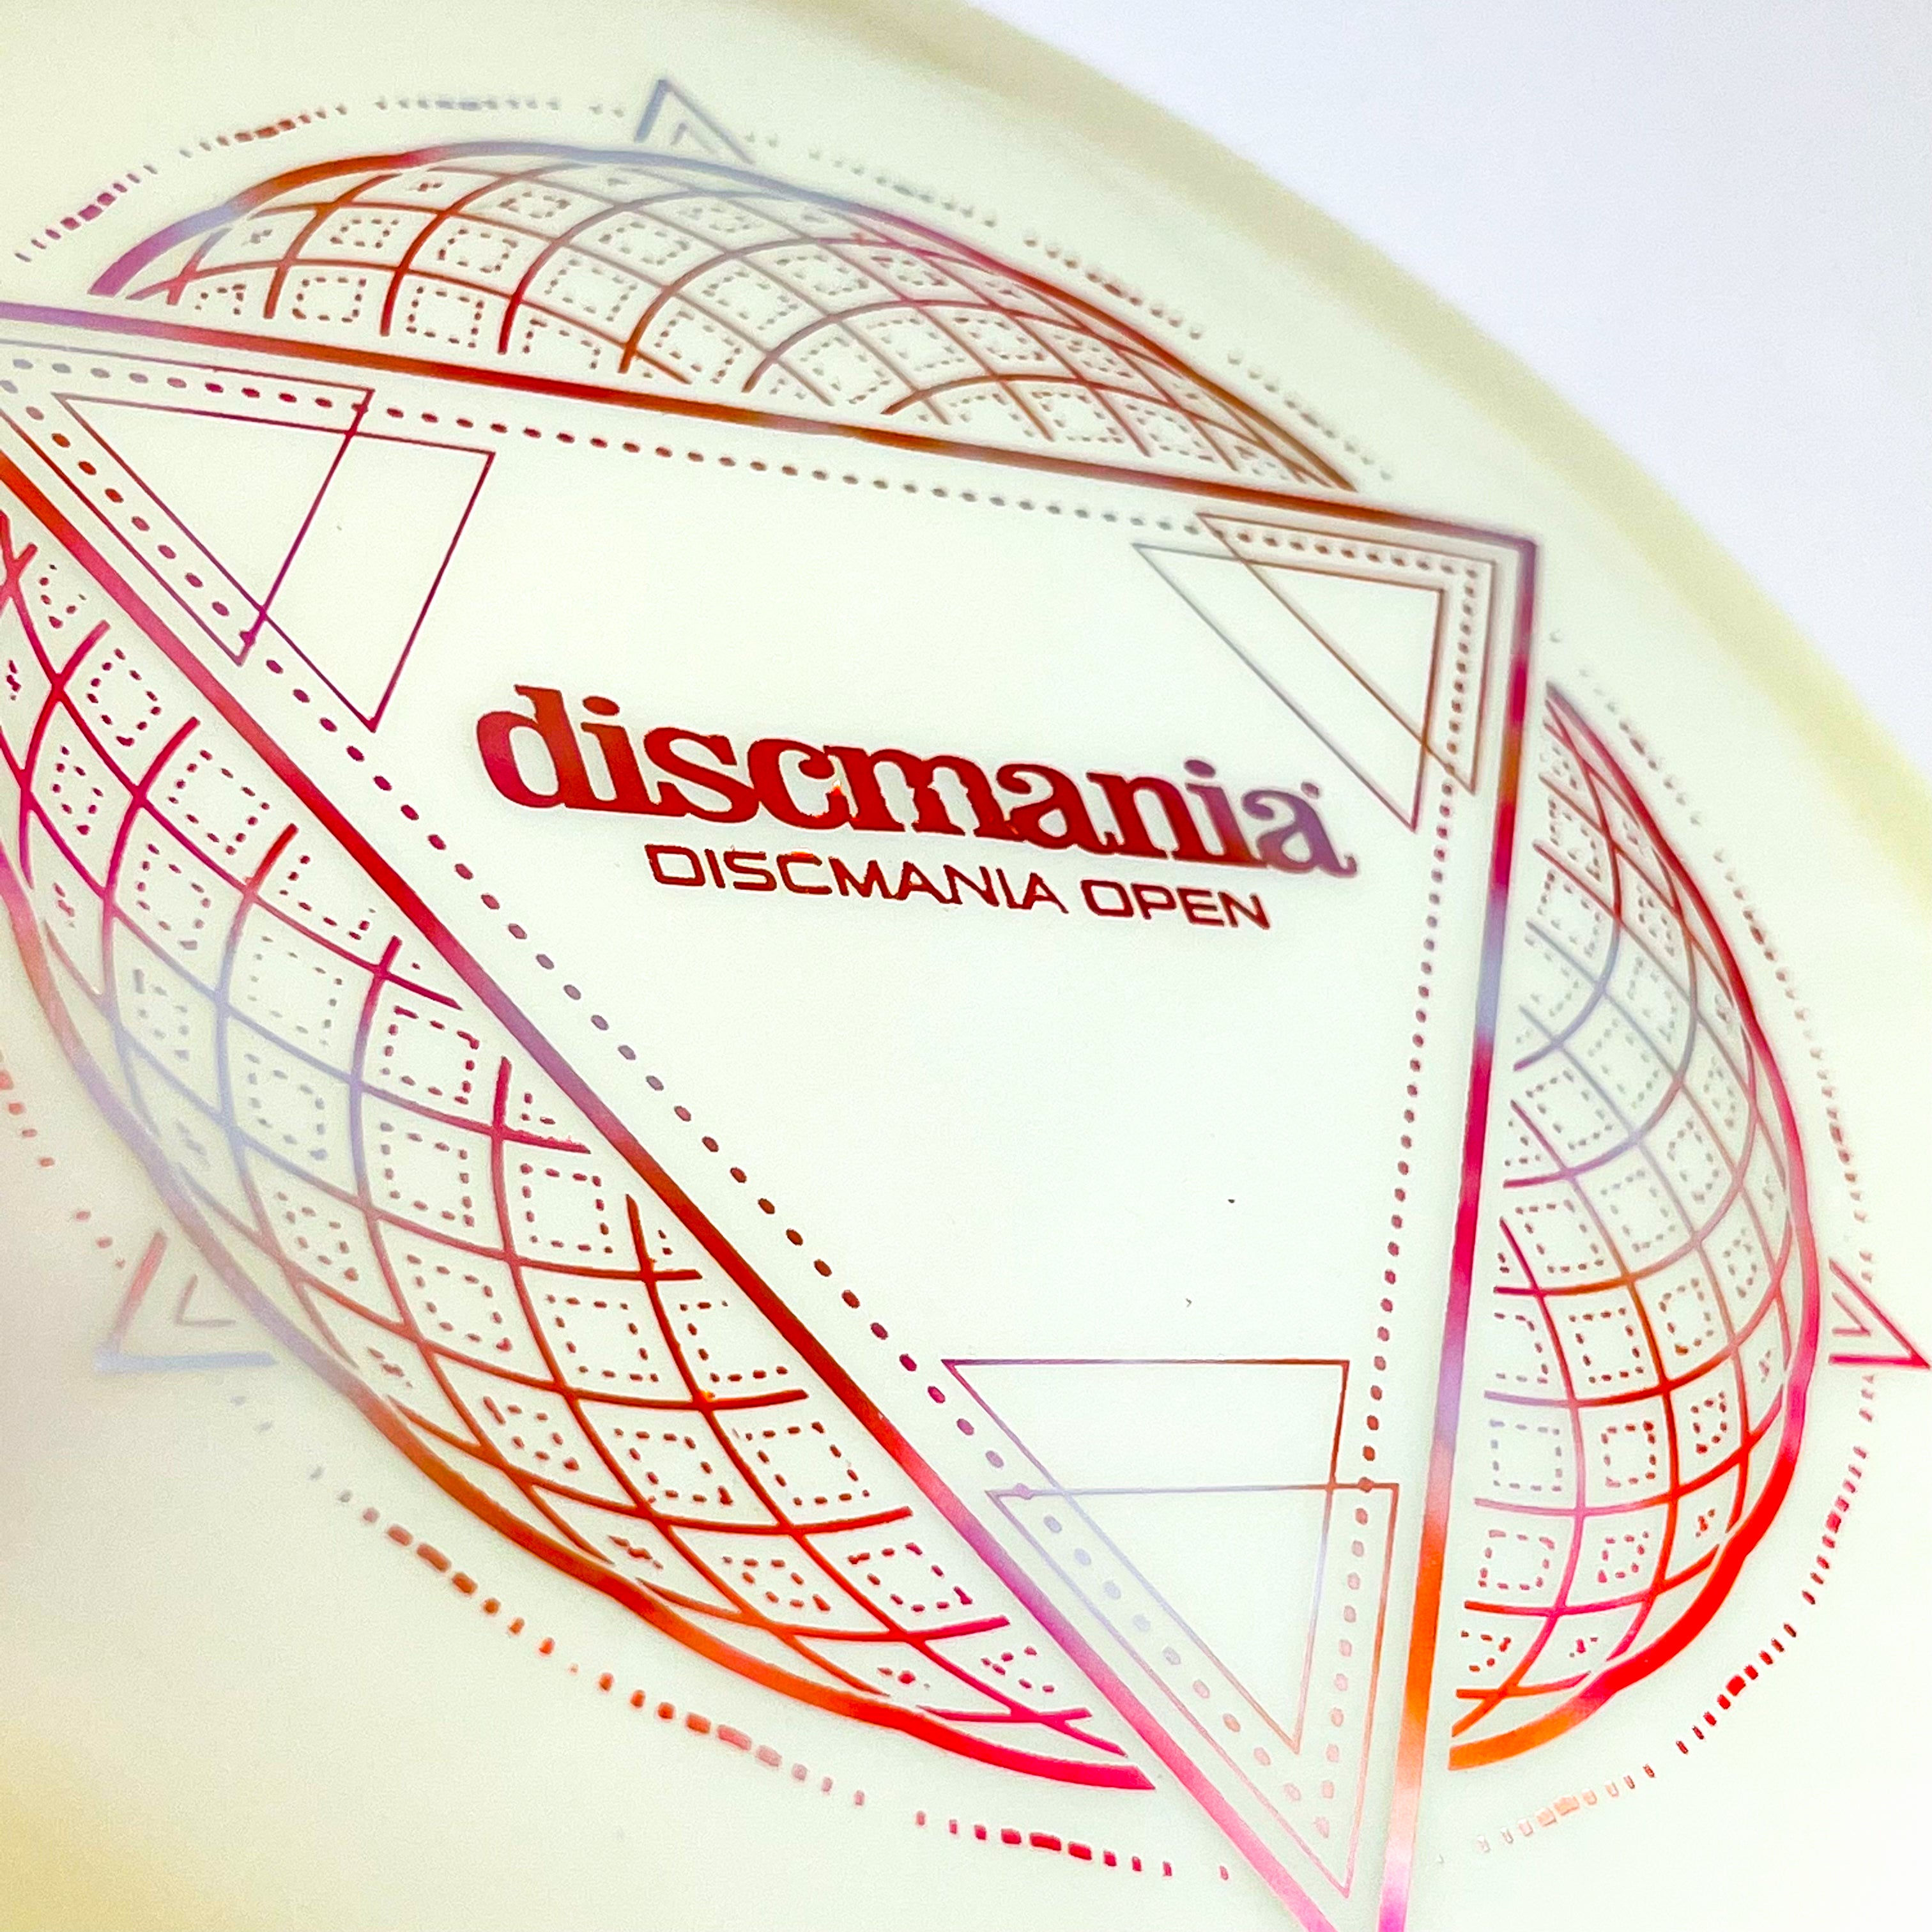 Special Edition Discmania Open Lumen Enigma (Glow)